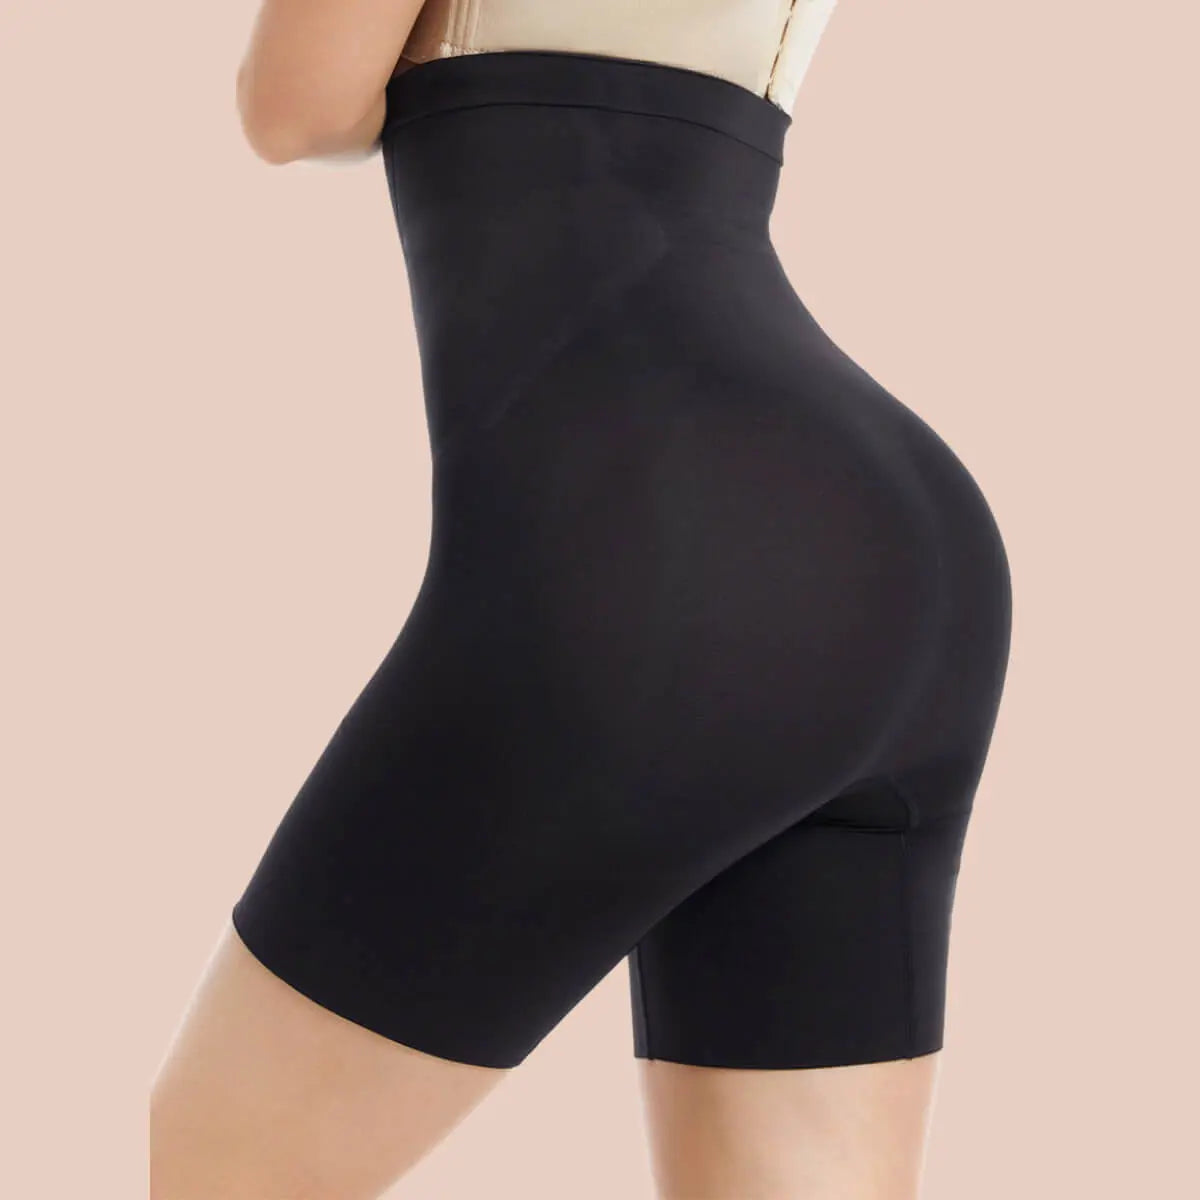 SHAPERX High Waist Shorts Tummy Control Butt Enhancer